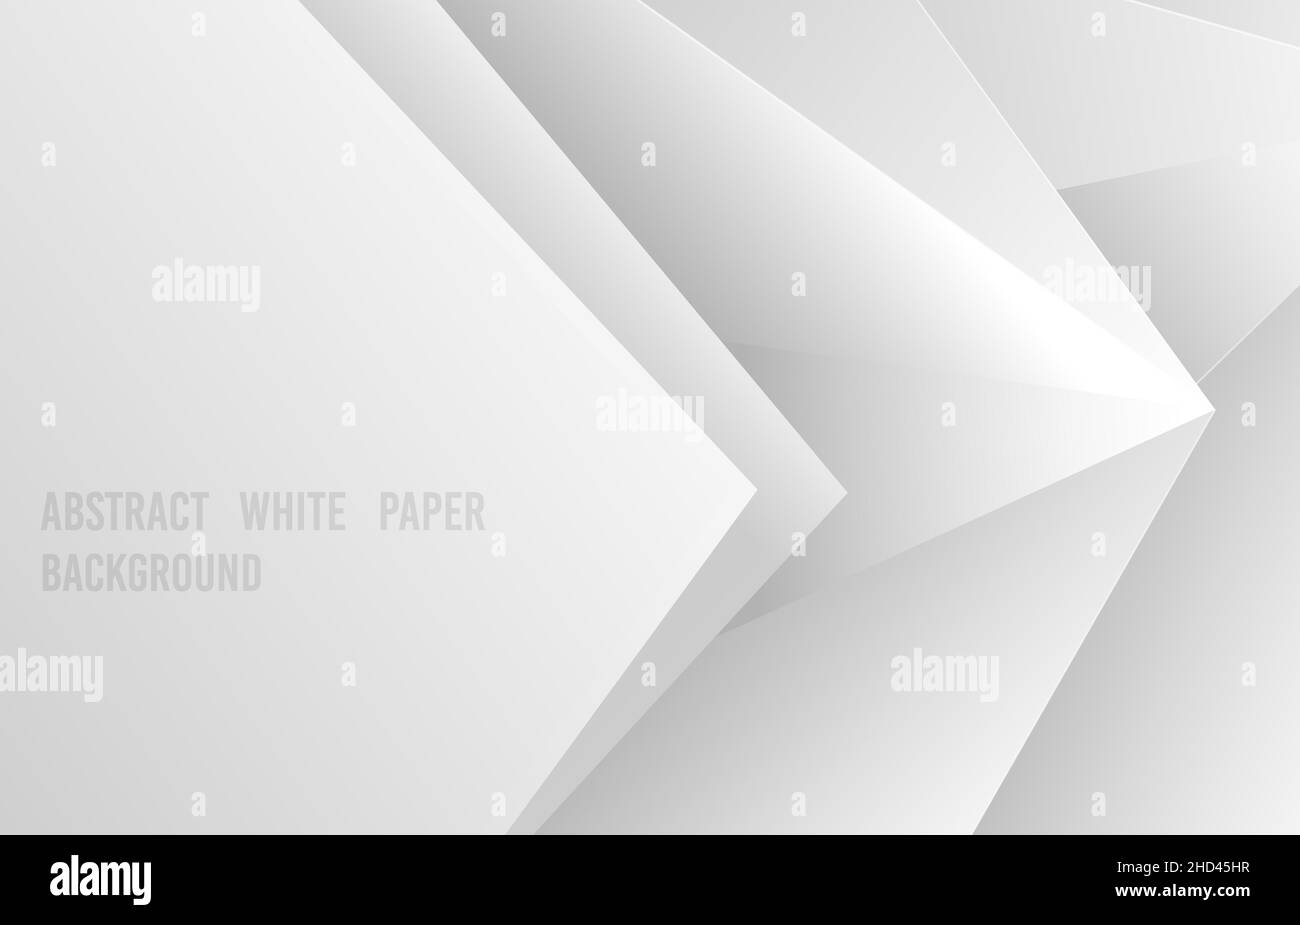 Abstraktes Farbverlauf weiß und grau Schablone Stil von Papier geschnitten. Überlappendes Design von Dreiecken Form Muster Hintergrund. Stock Vektor